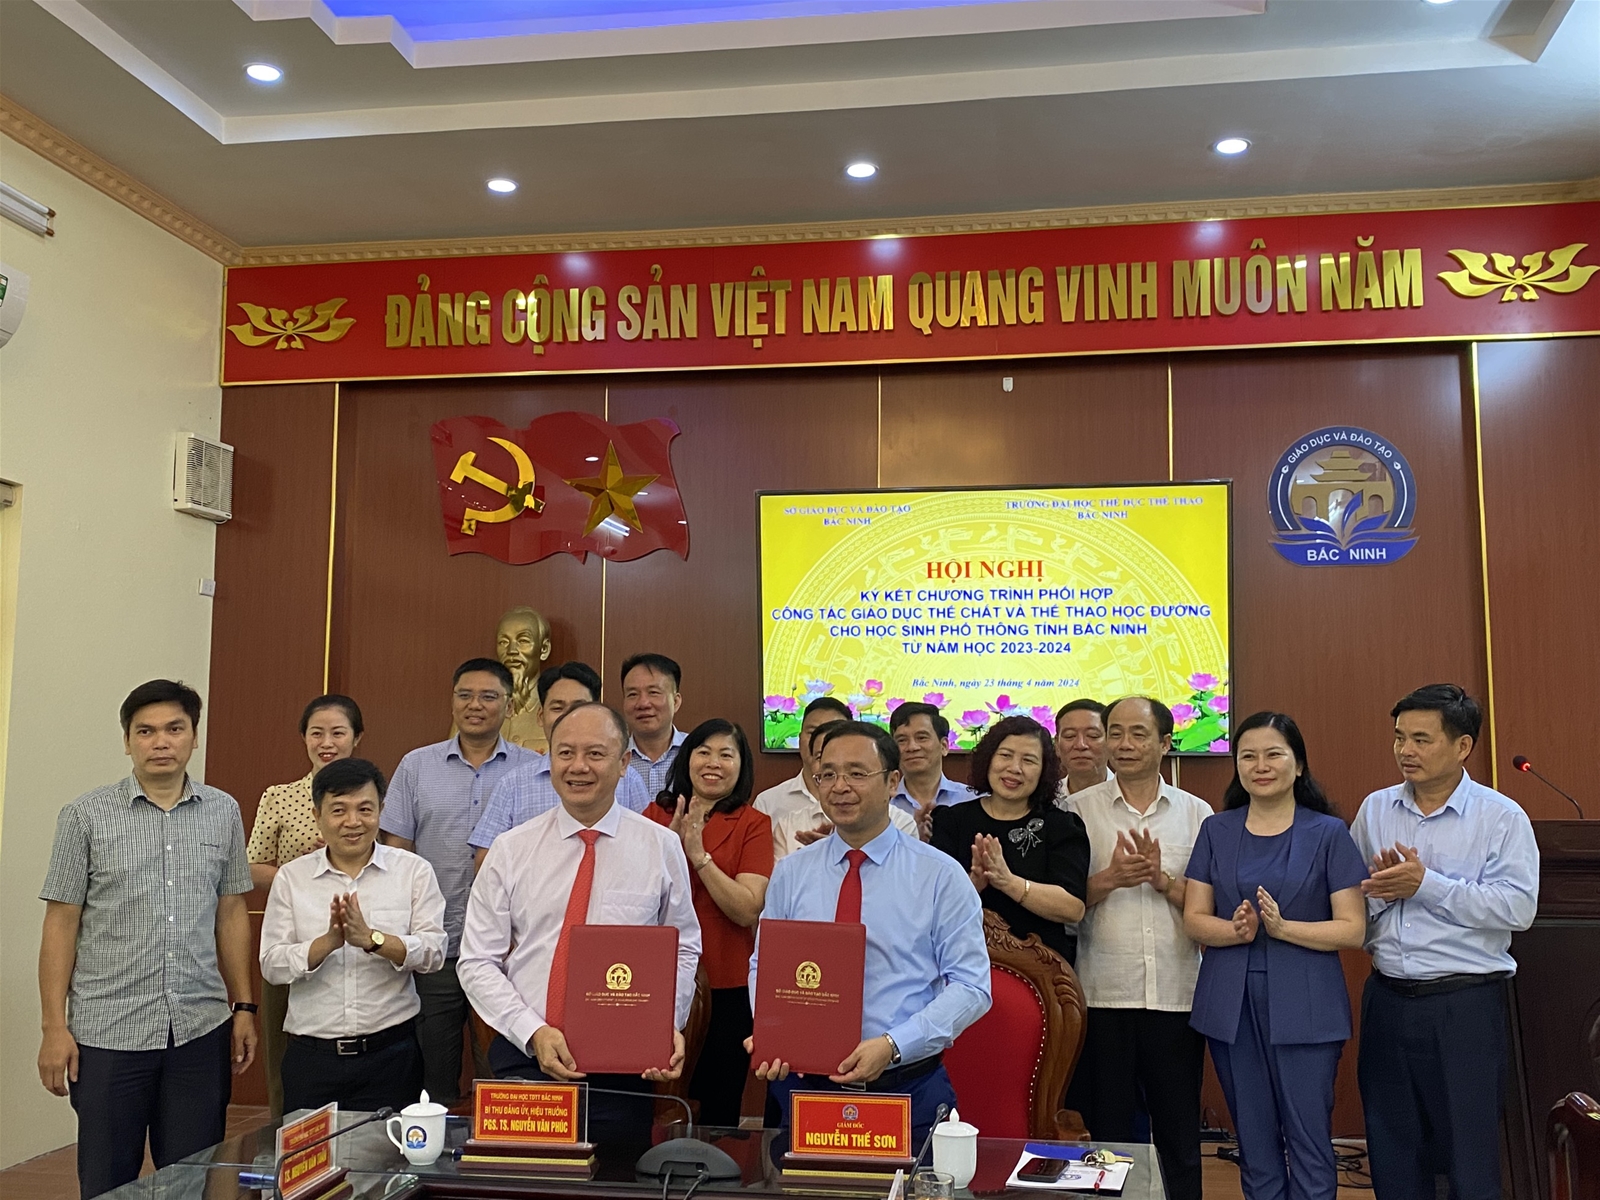 Trường Đại học TDTT Bắc Ninh ký kết hợp tác với Sở Giáo dục và Đào tạo tỉnh Bắc Ninh về công tác giáo dục thể chất và thể thao học đường cho học sinh phổ thông Bắc Ninh